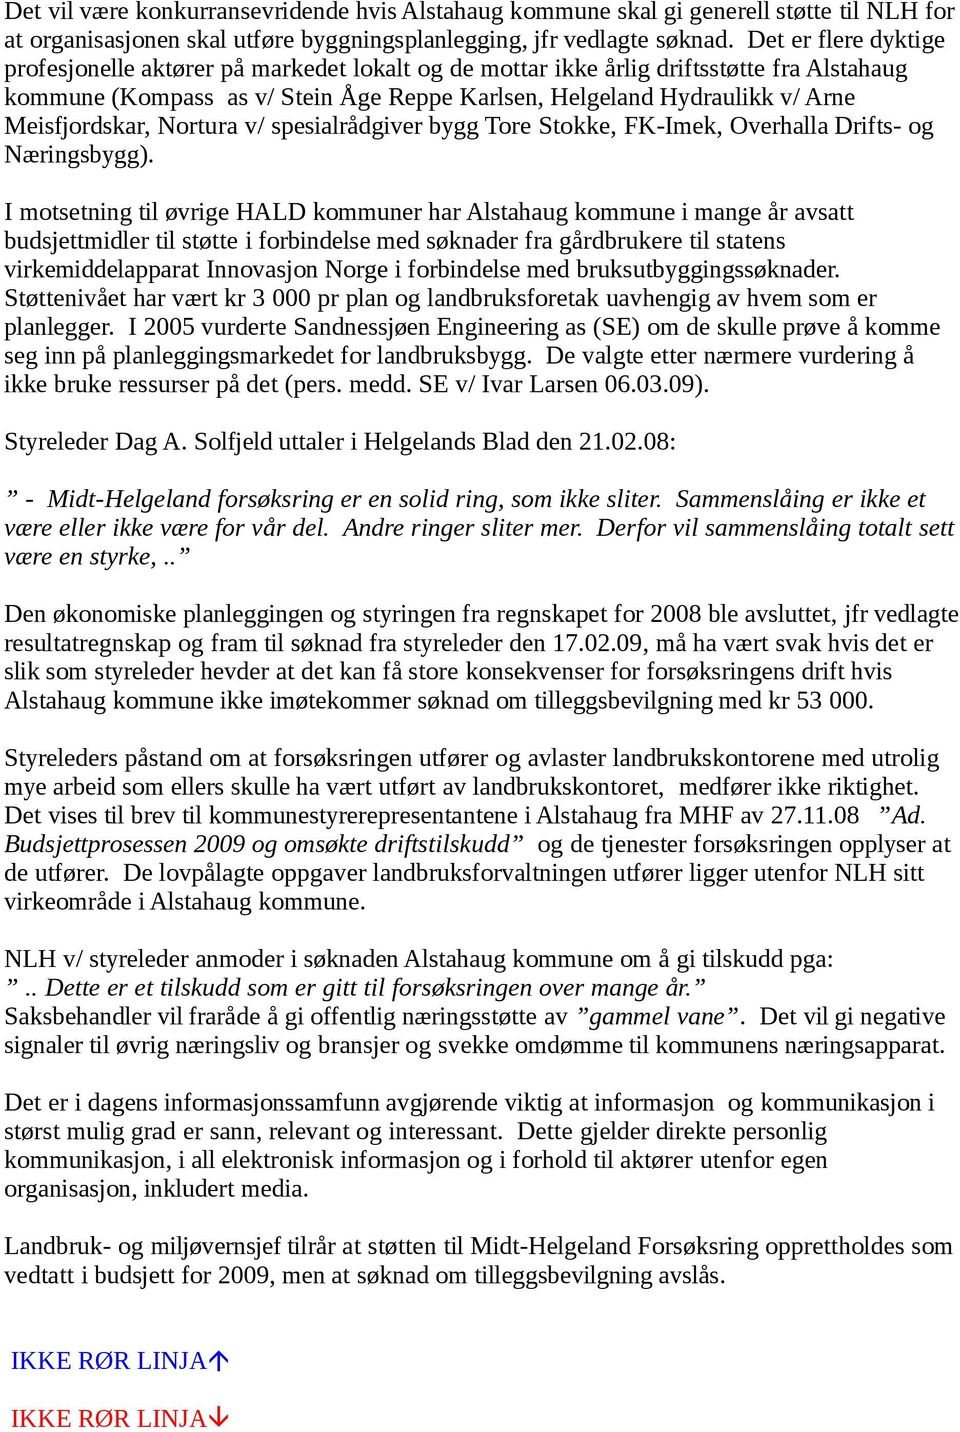 Meisfjordskar, Nortura v/ spesialrådgiver bygg Tore Stokke, FK-Imek, Overhalla Drifts- og Næringsbygg).